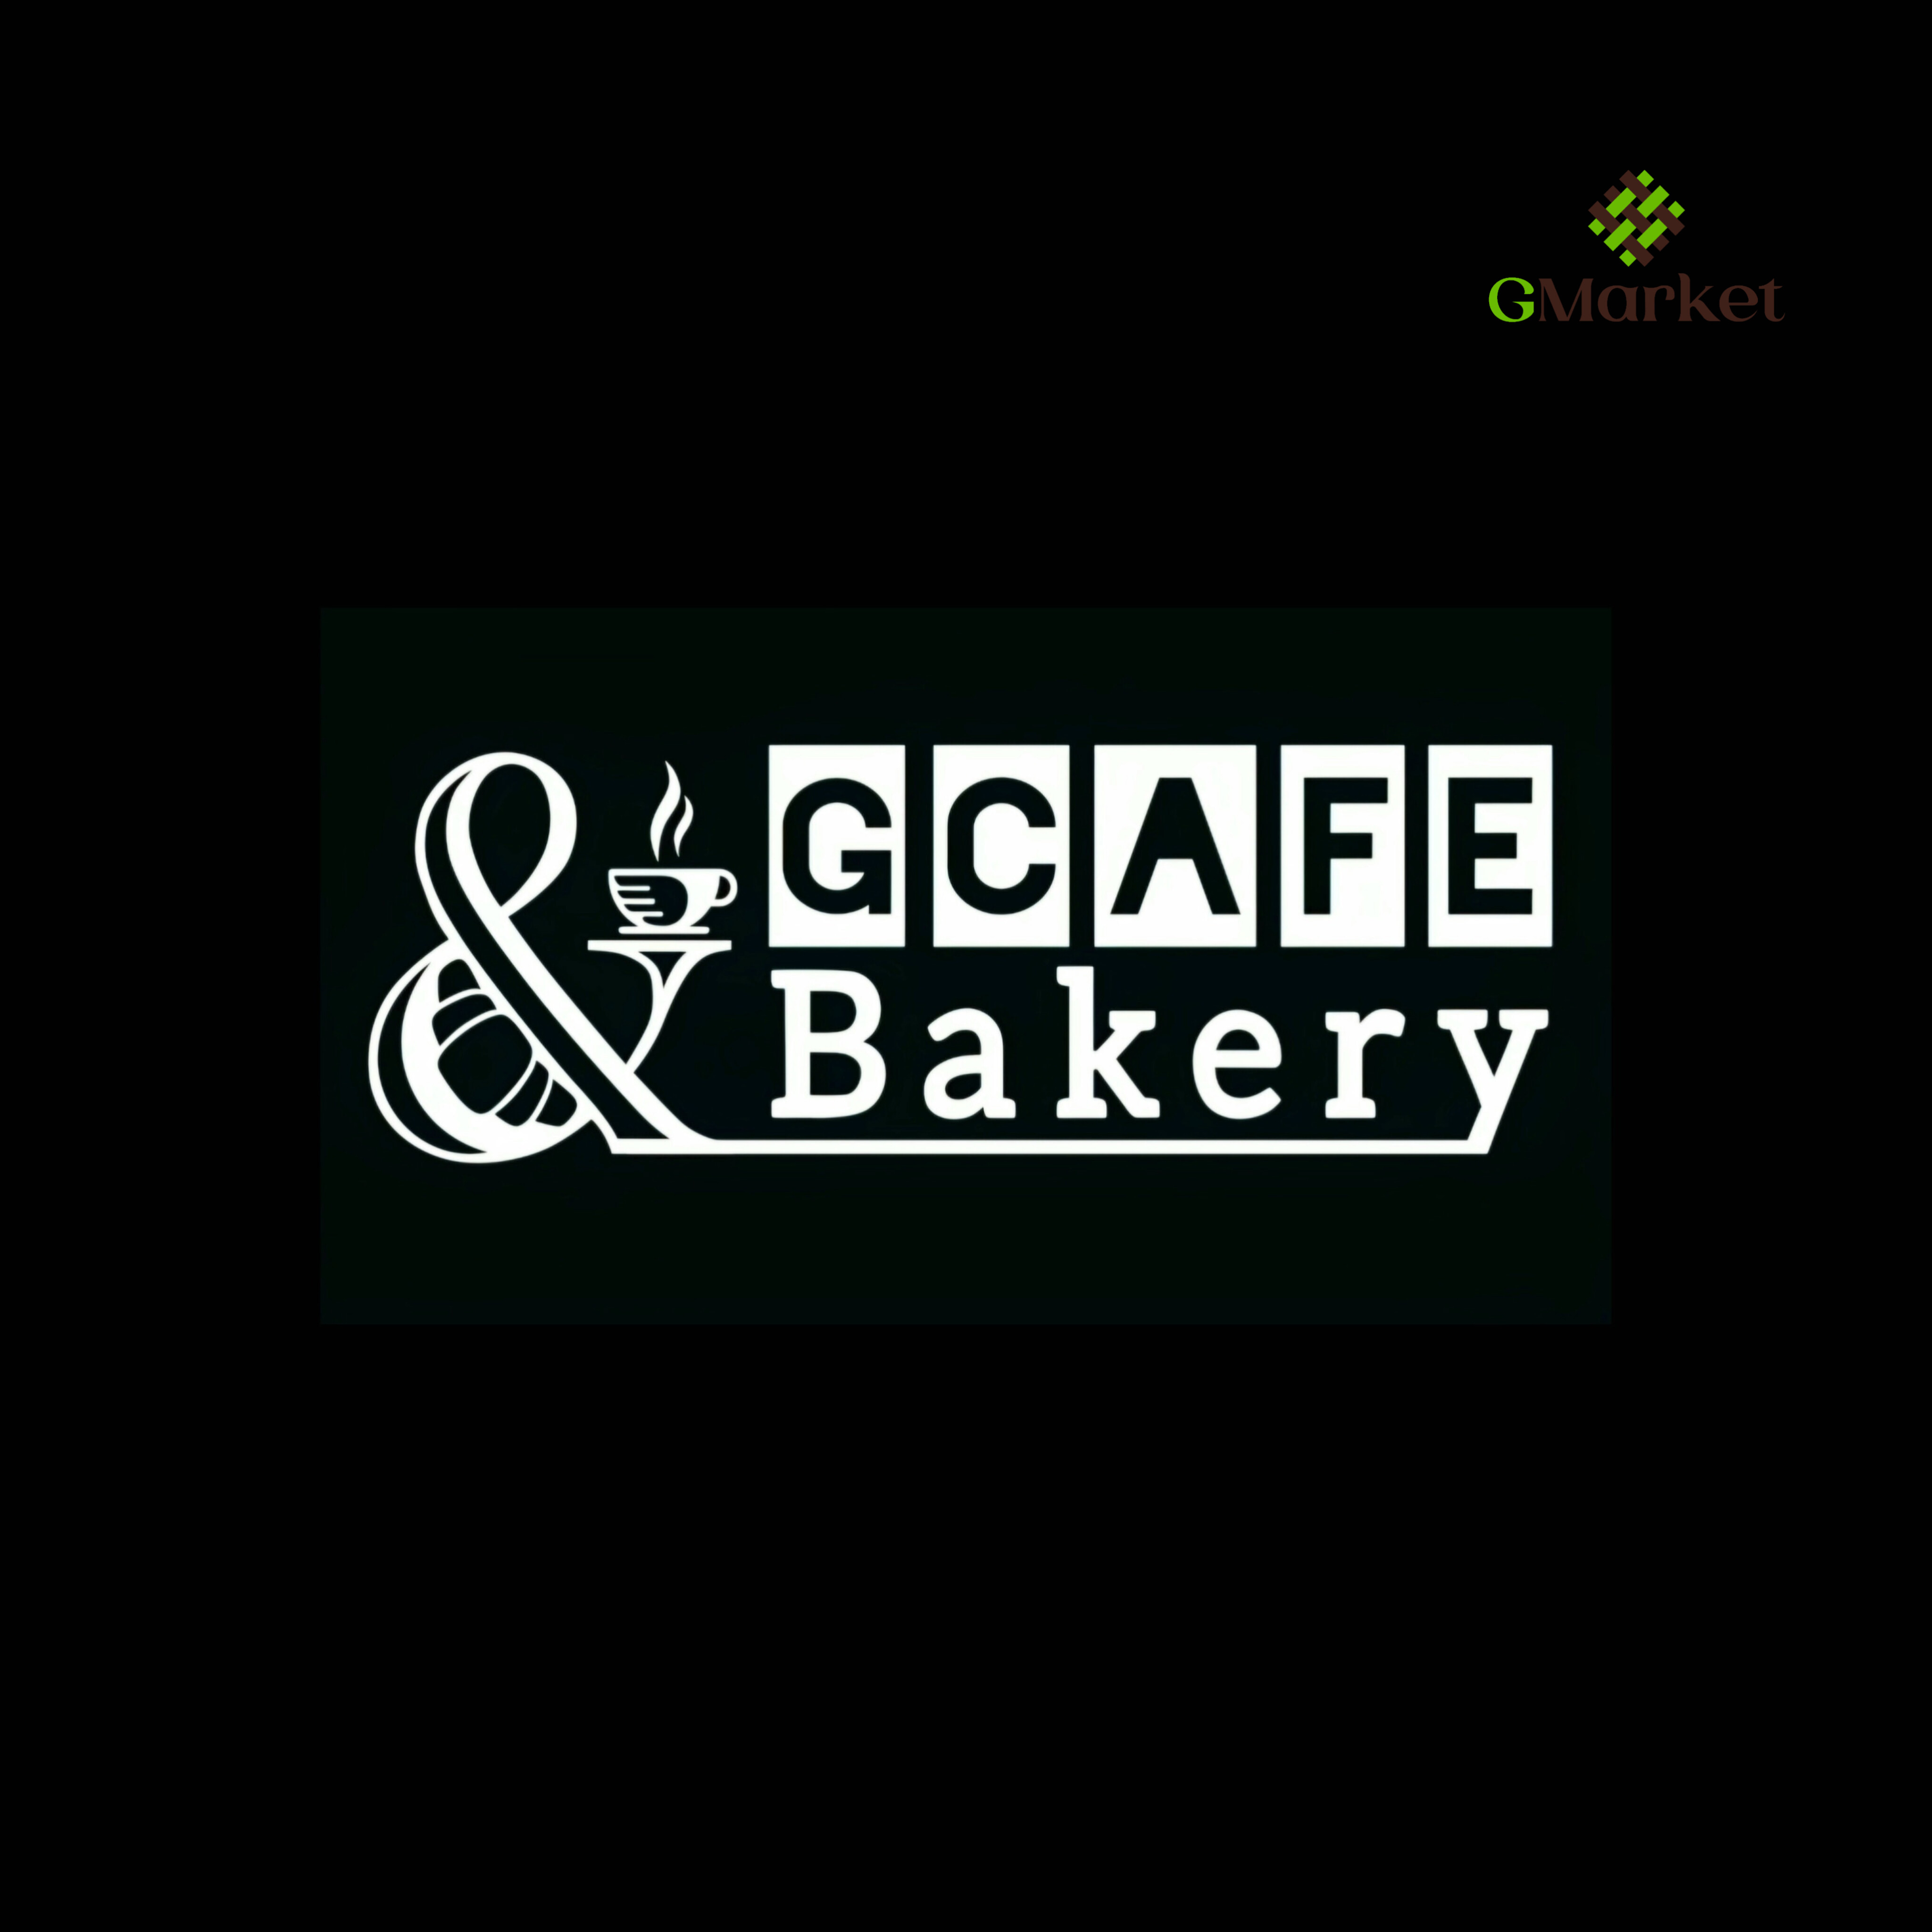 Gcafe & bakery